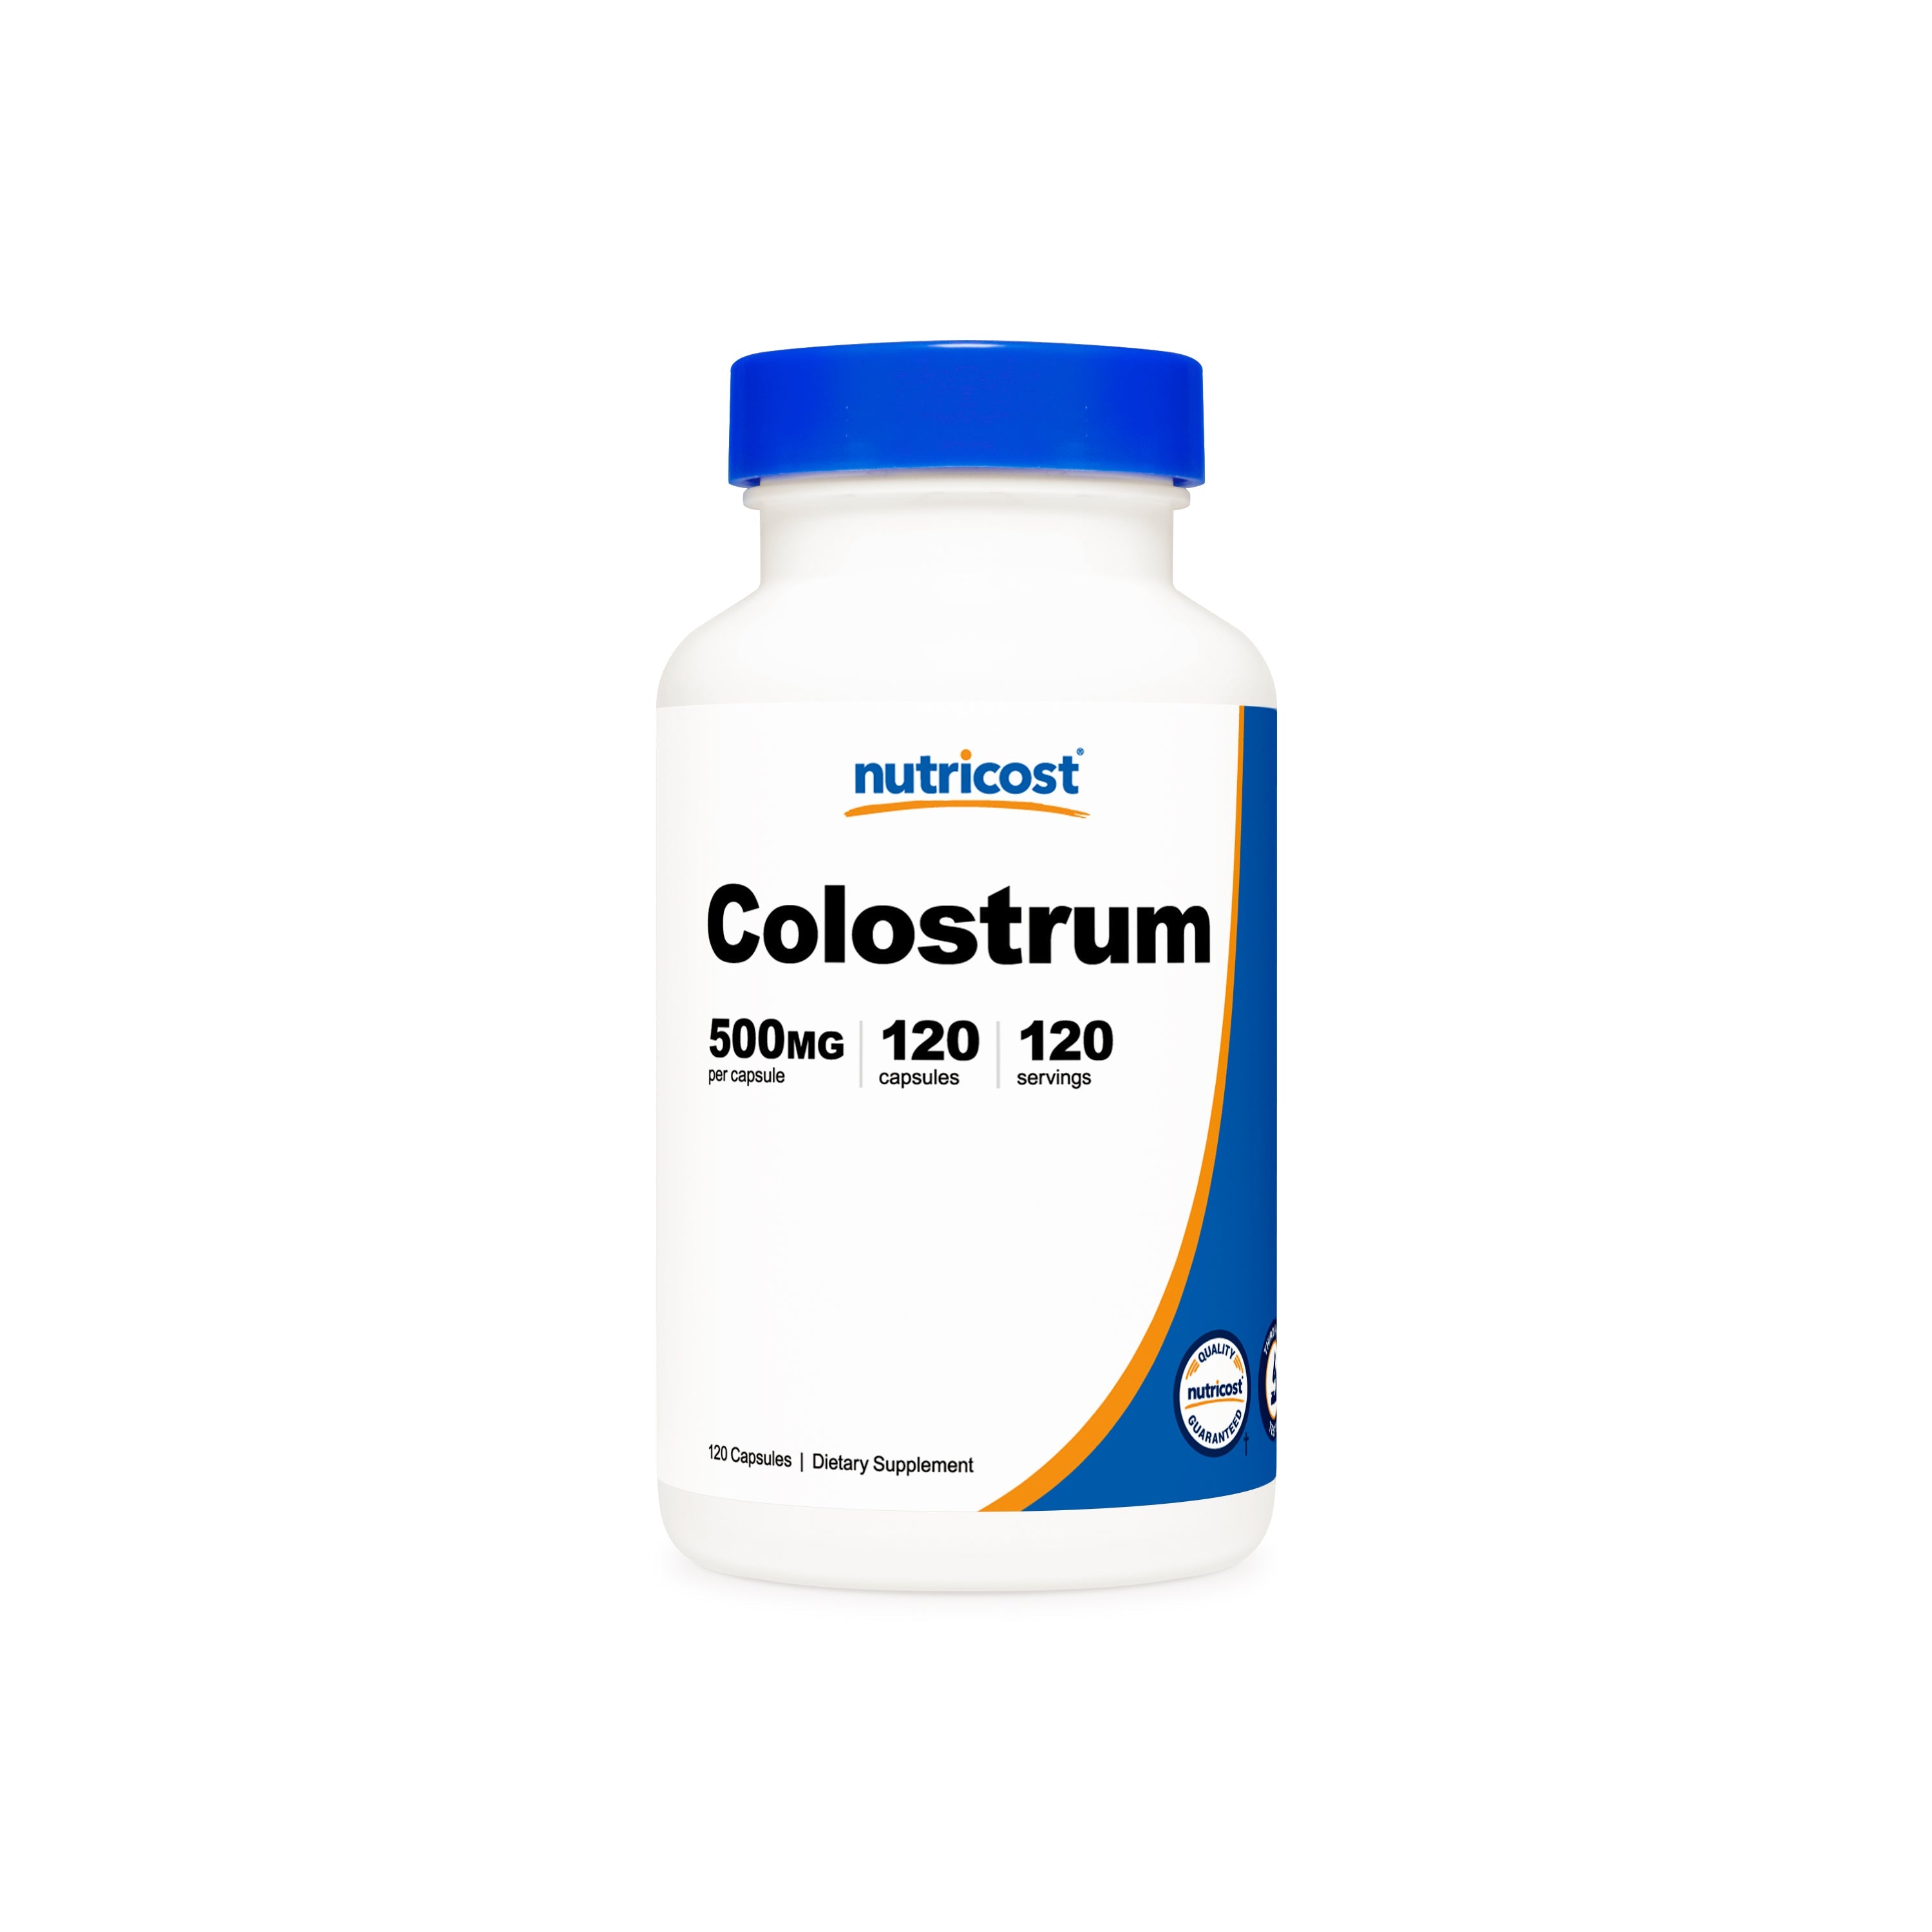 Nutricost Colostrum Capsules